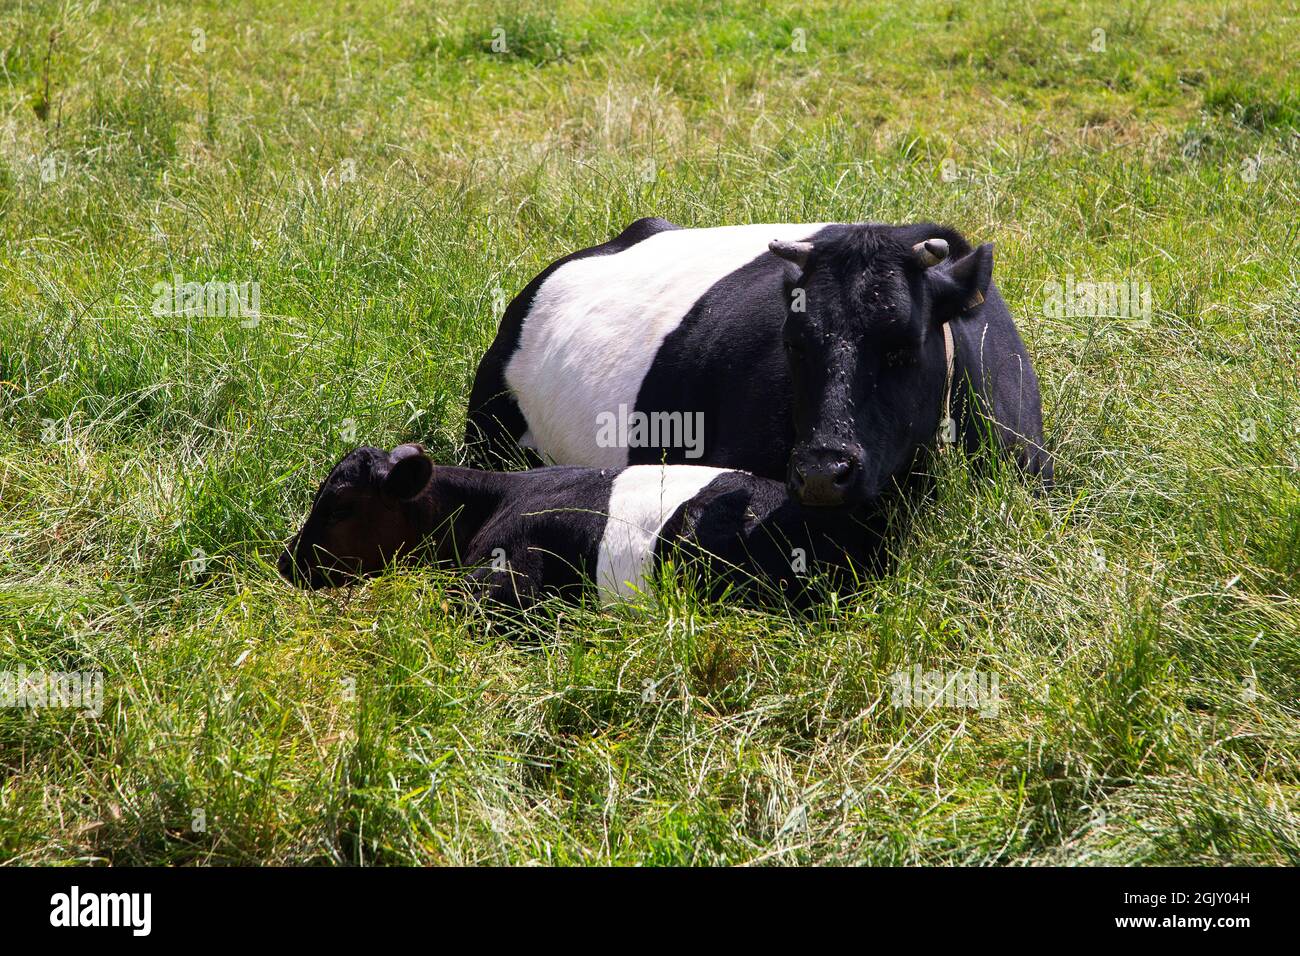 Vaca con cinturón con ternero joven descansando en hierba alta Foto de stock